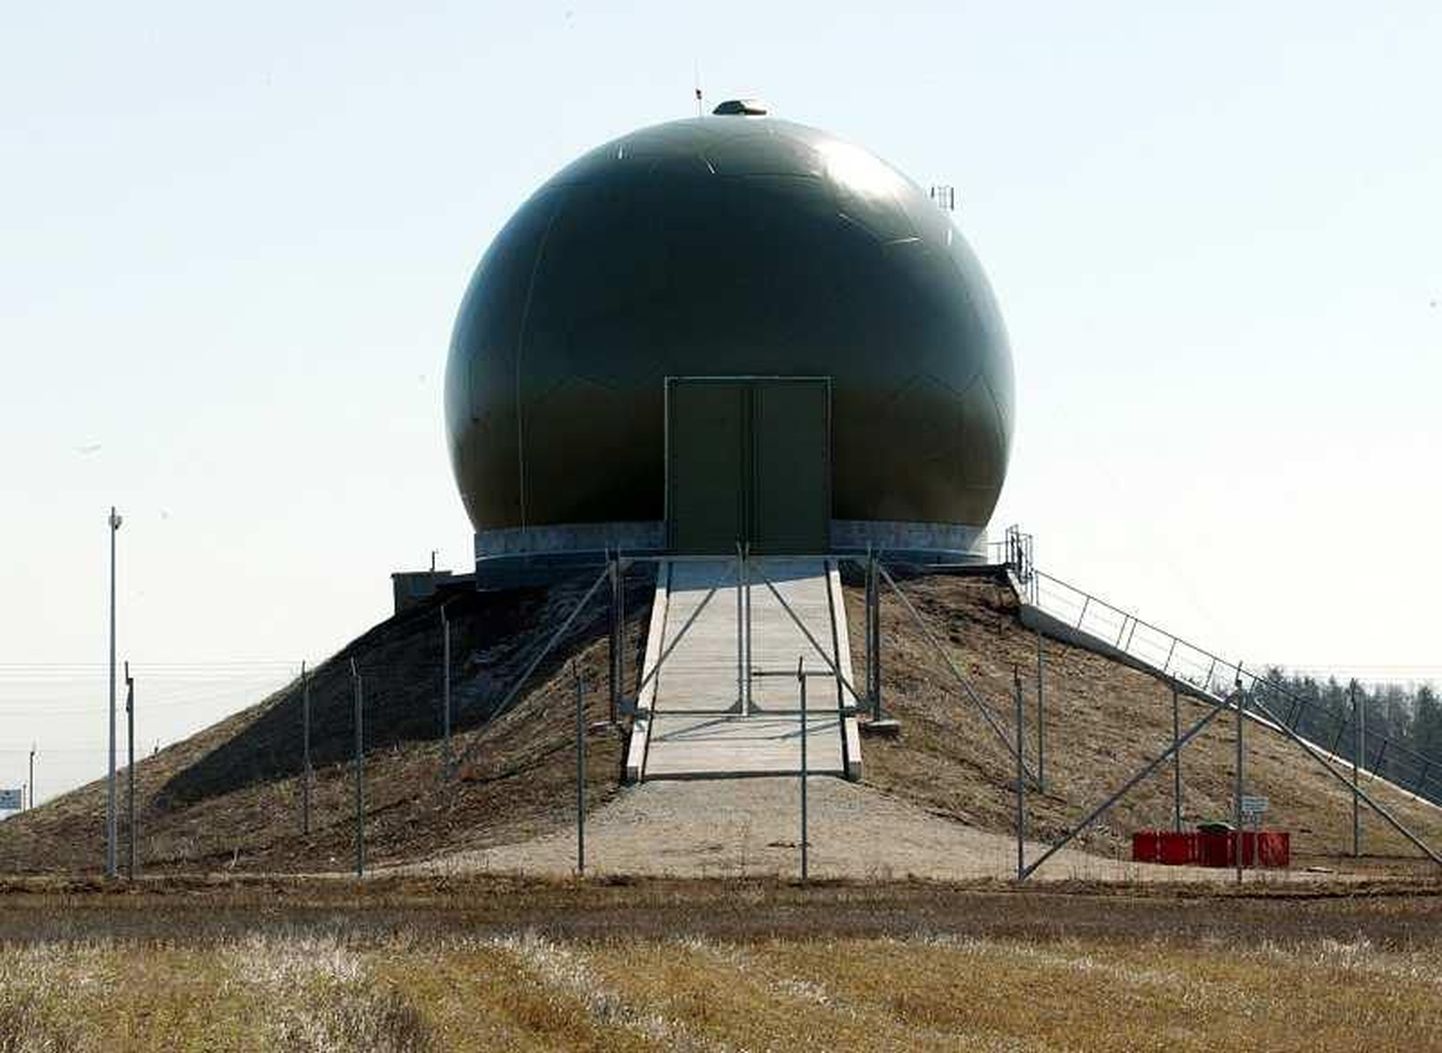 Kaks radarit, mis hakkavad paiknema vastavalt Muhu saarel ja Lõuna-Eestis, täiendavad Eesti seni ainsat kolmedimensioonilist kaugmaaradarit Lääne-Virumaal Kellaveres.